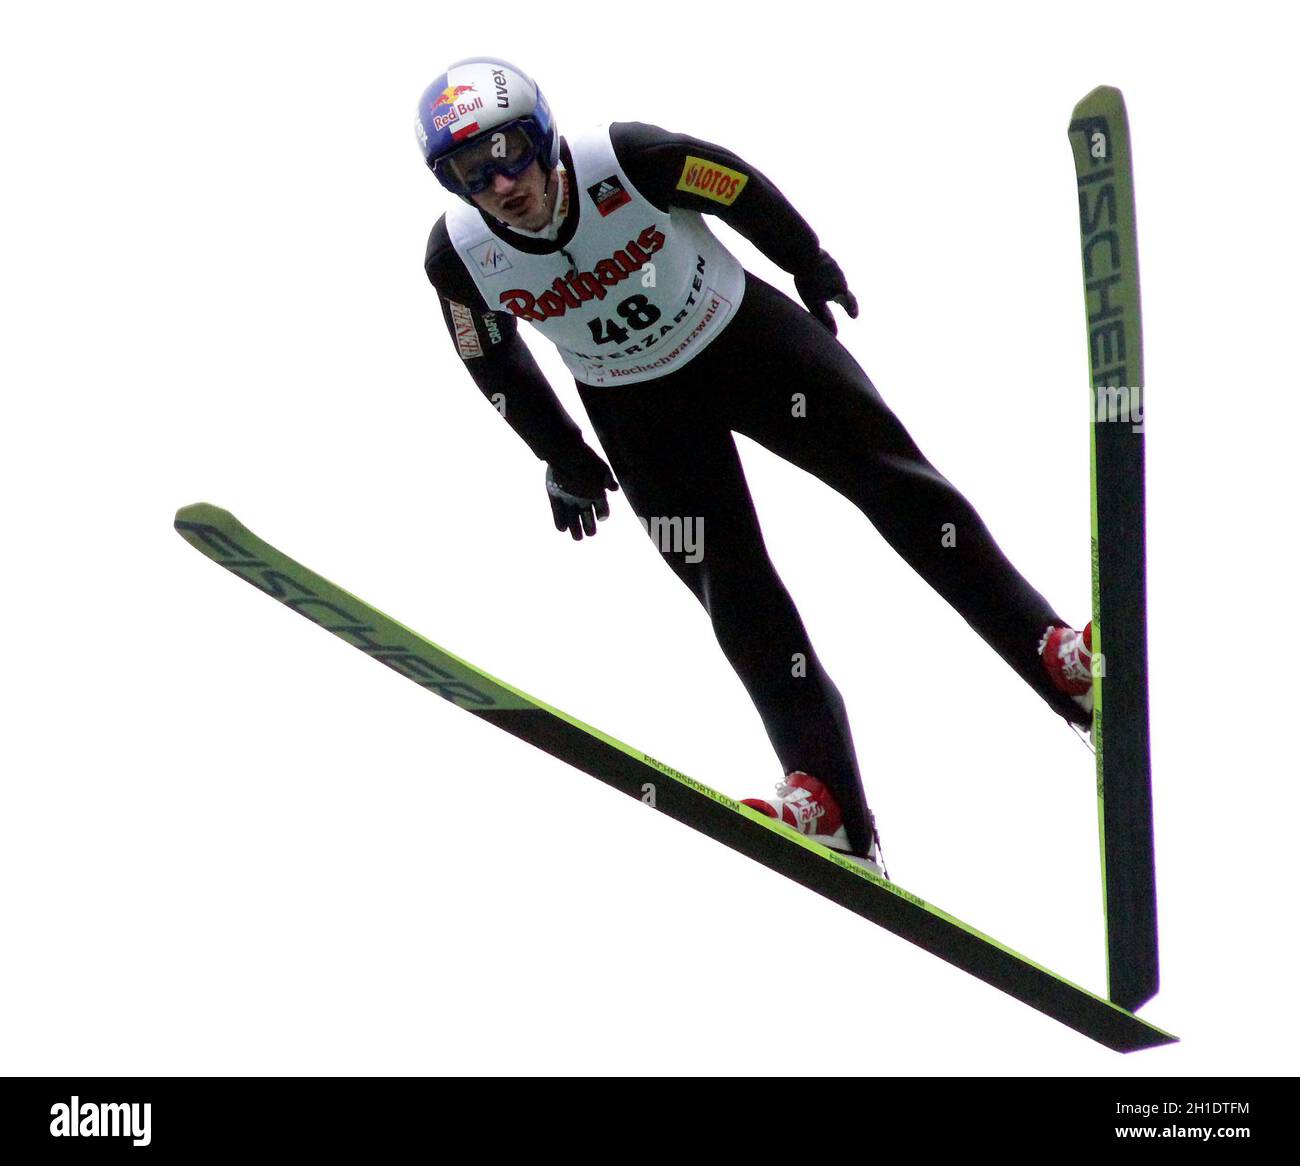 Adam Malysz hat den Einzelwettbewerb der Herren beim FIS Sommer Grand Prix 2010 im Adler Skistadion von Hinterzarten gewonnen Stock Photo